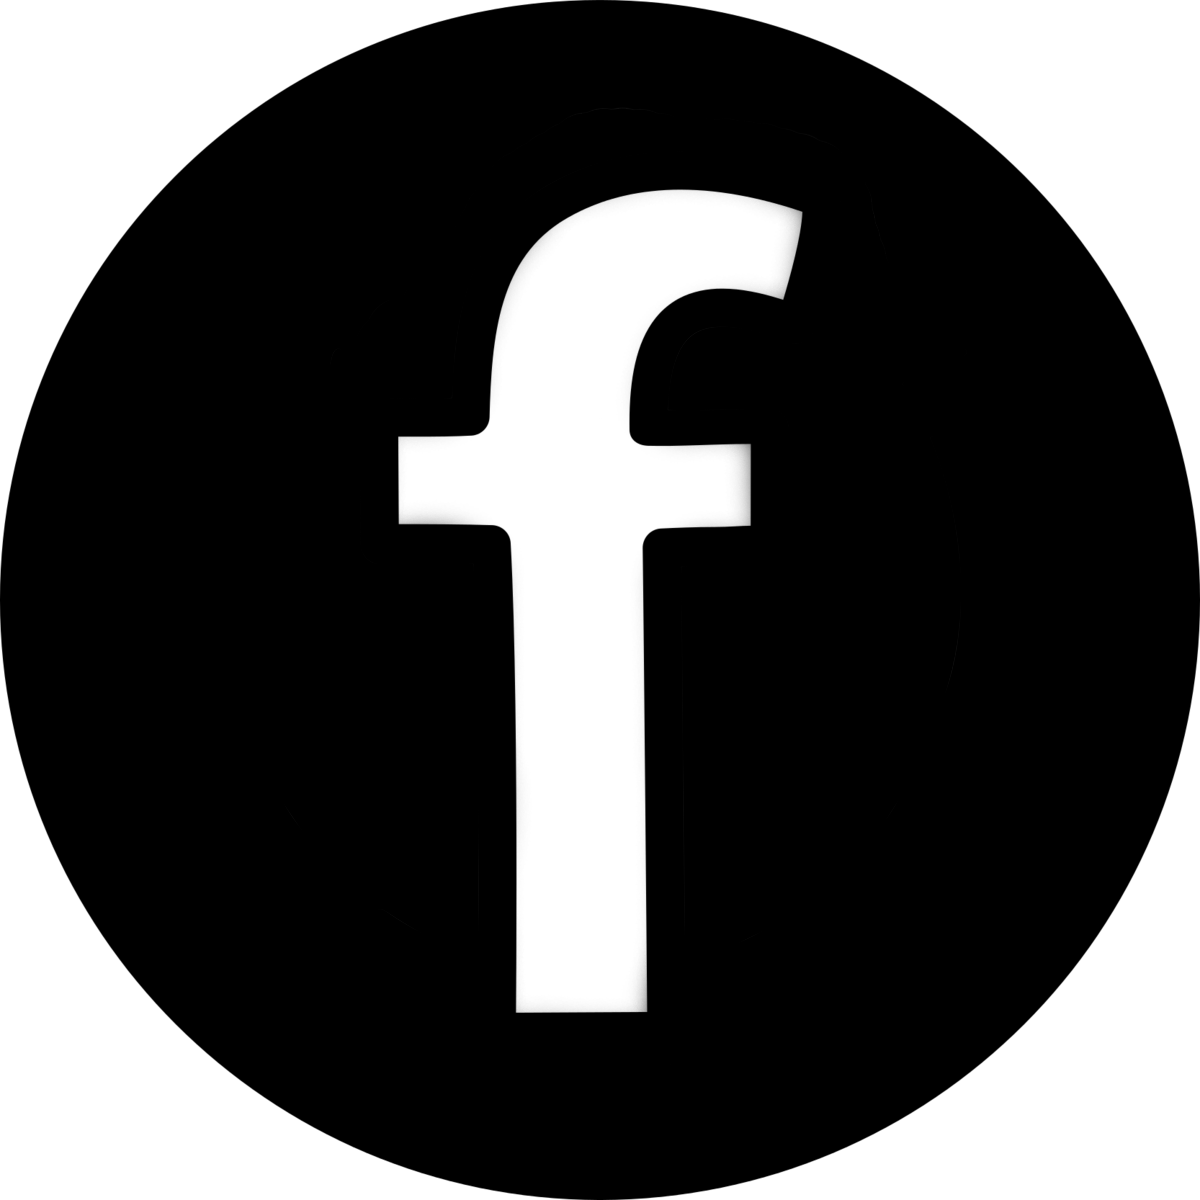 Transparent Facebook Instagram Twitter Logo Png Crafts Diy And Ideas Blog